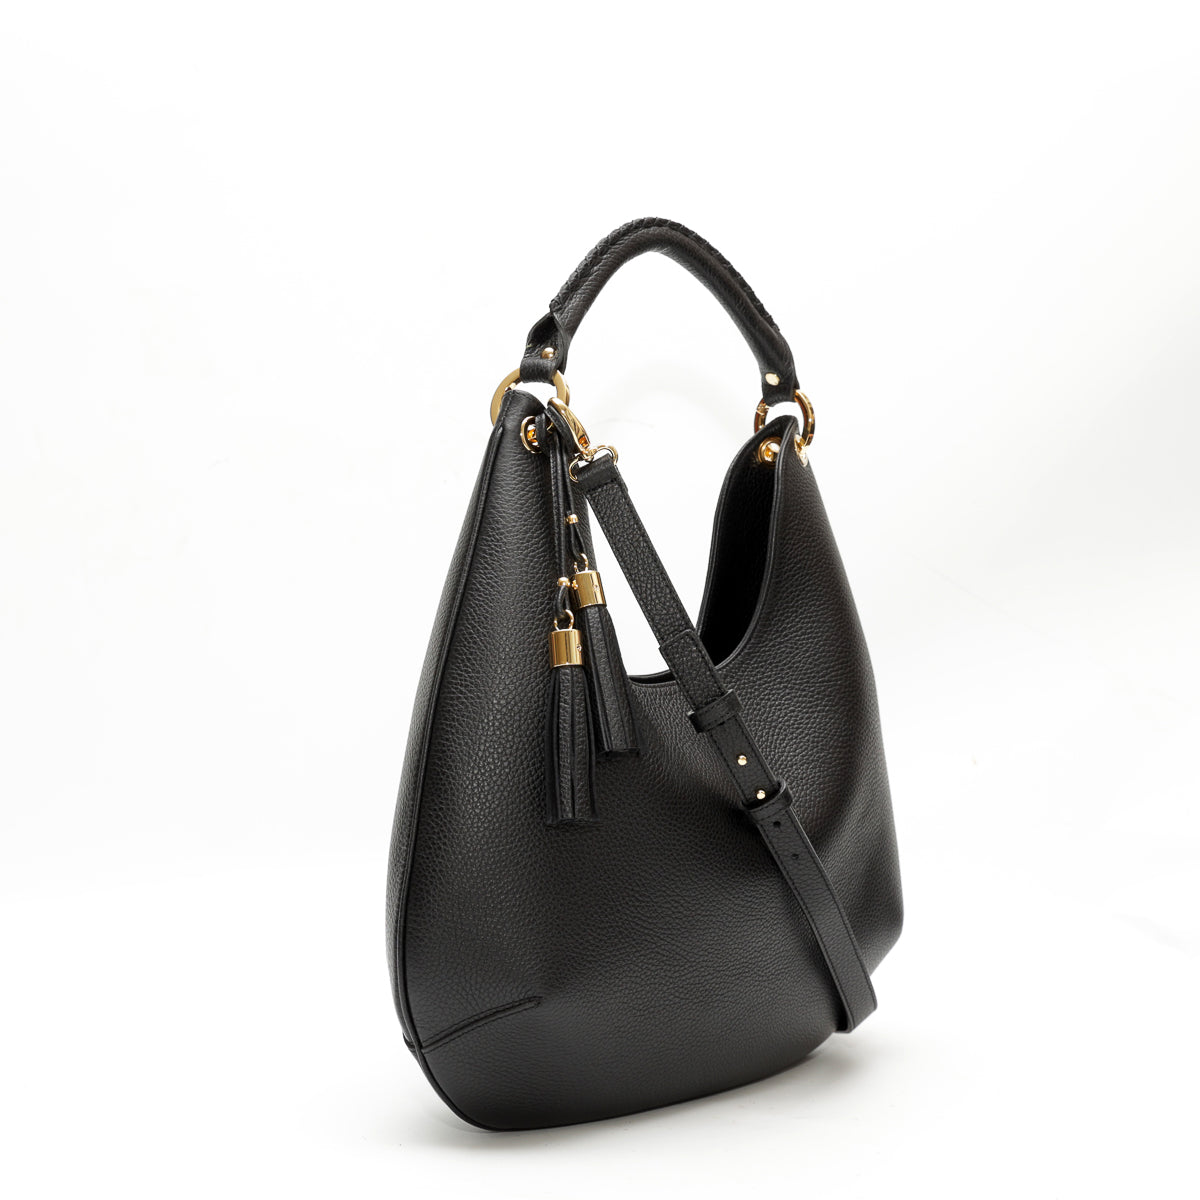 Lou bag, borsa in pelle martellata da donna con tracolla removibile, modello a spalla, colore nero, prodotta da Pianigiani